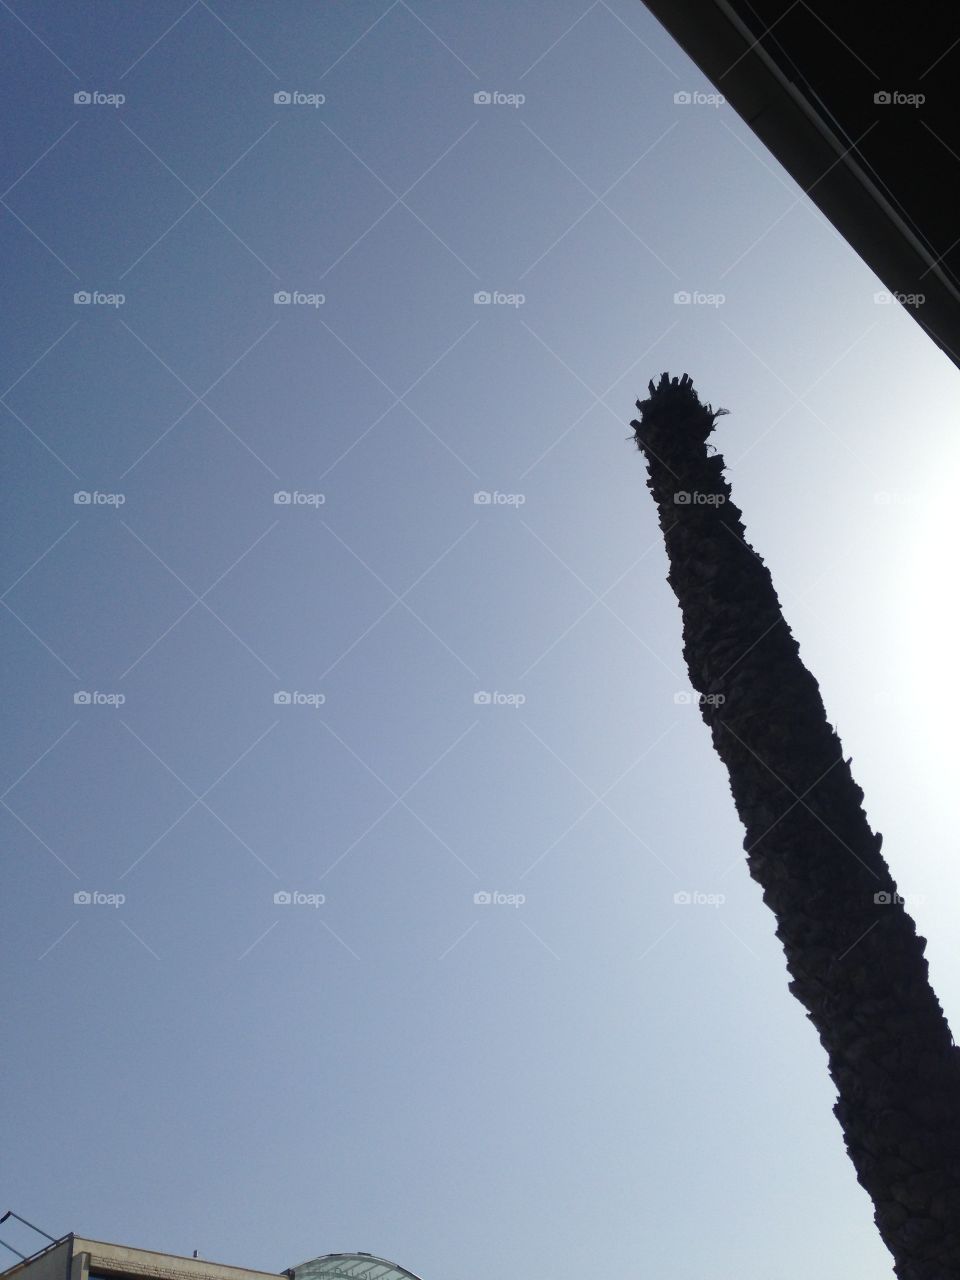 Palm tree with sky blue